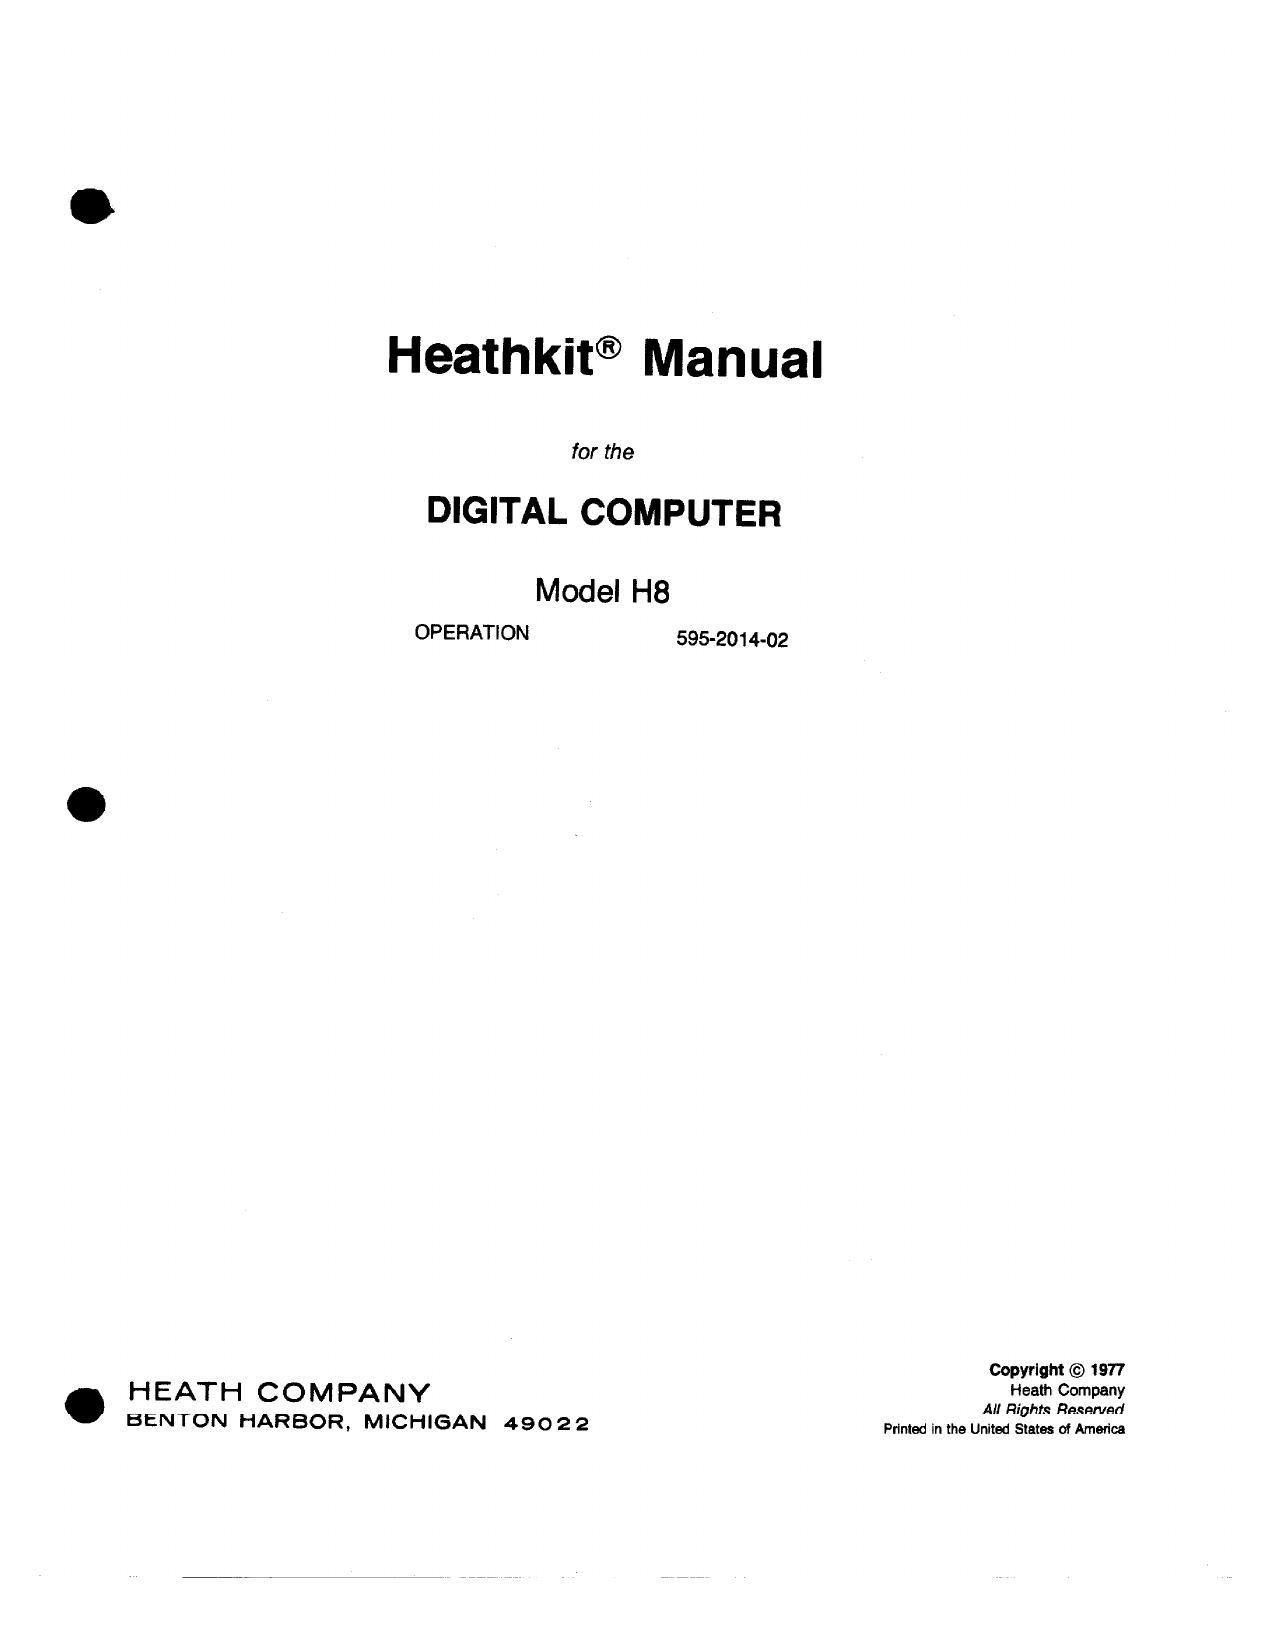 Heathkit H 8 Operation Manual